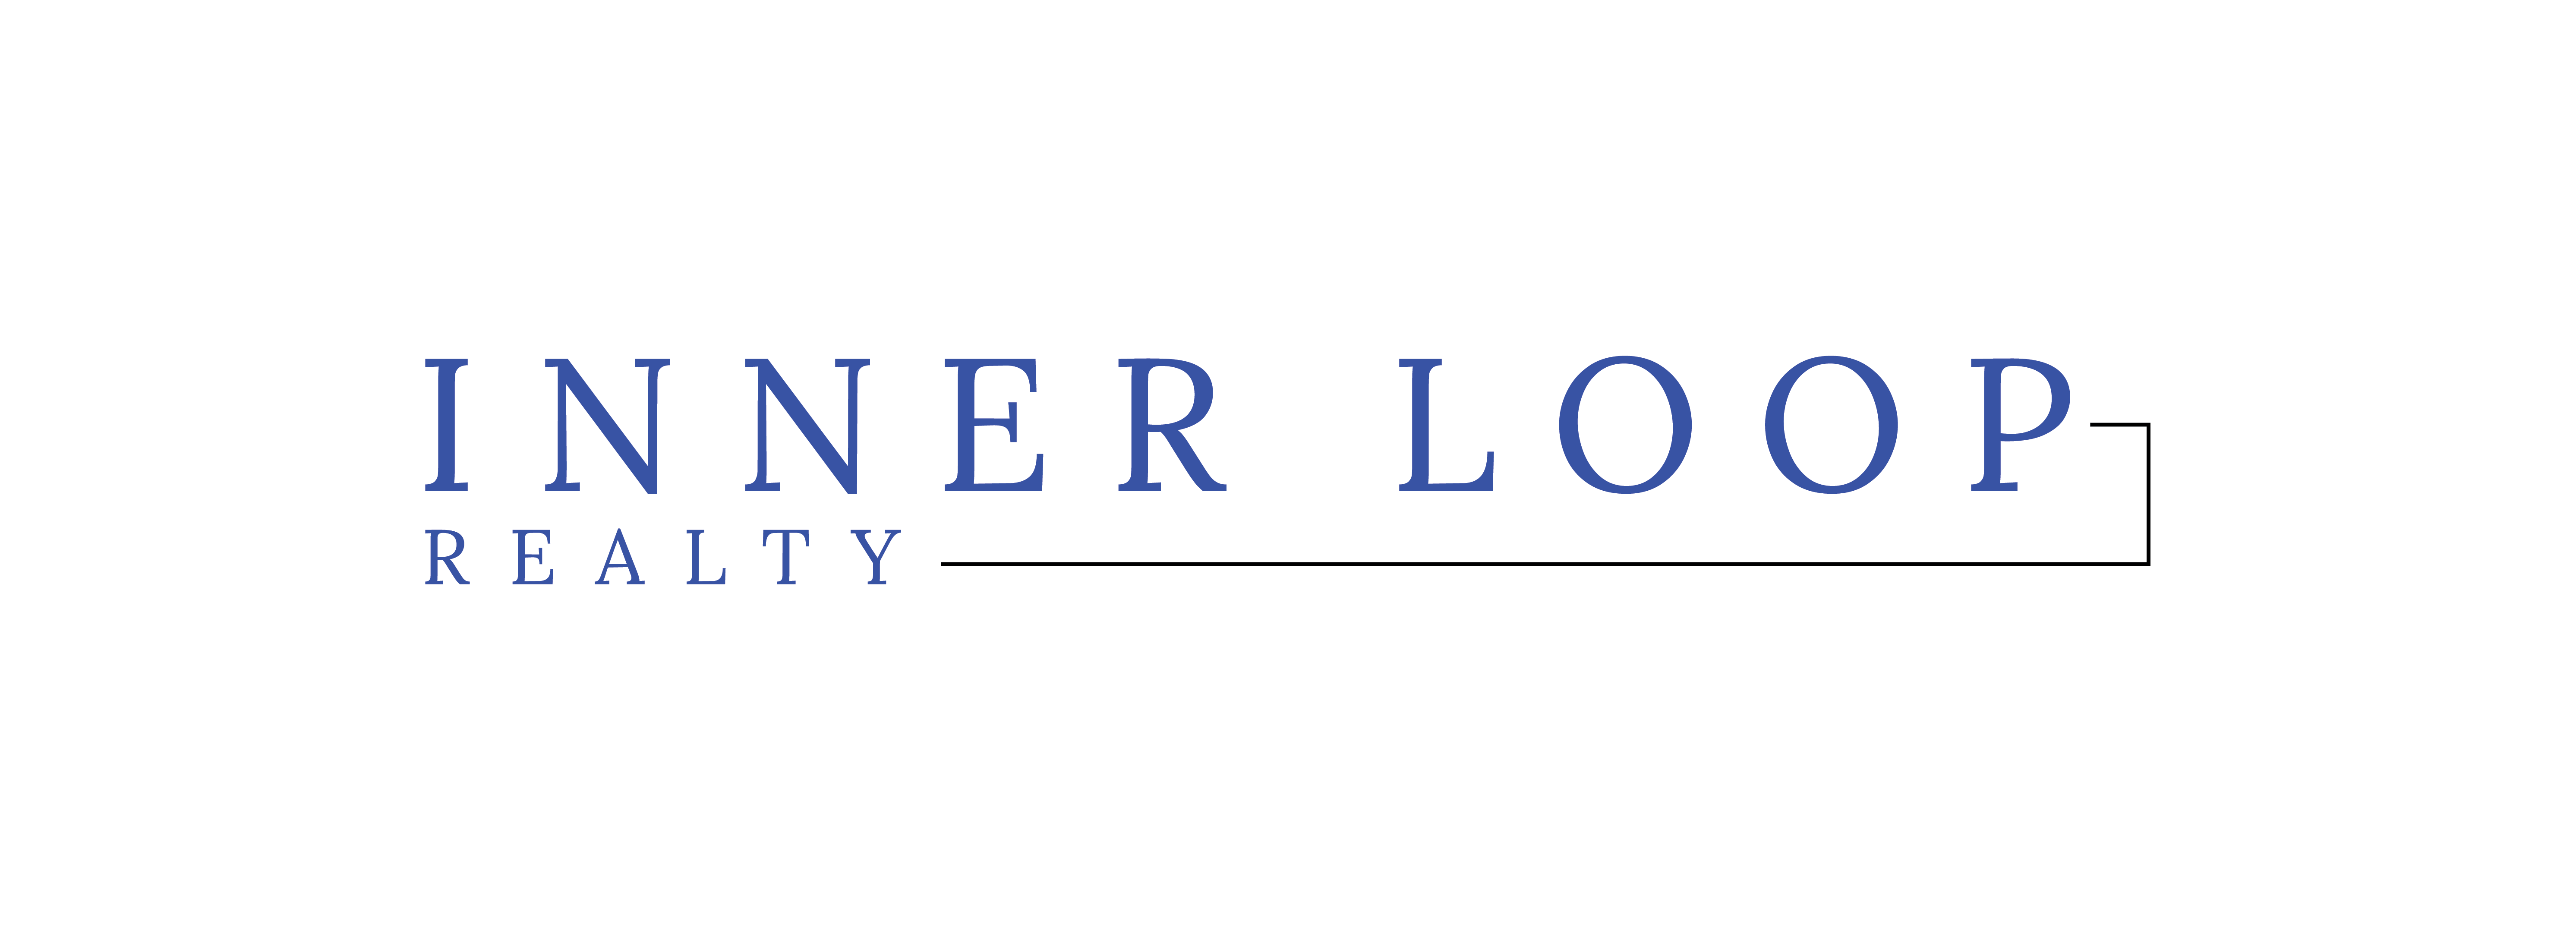 Inner Loop Realty logo